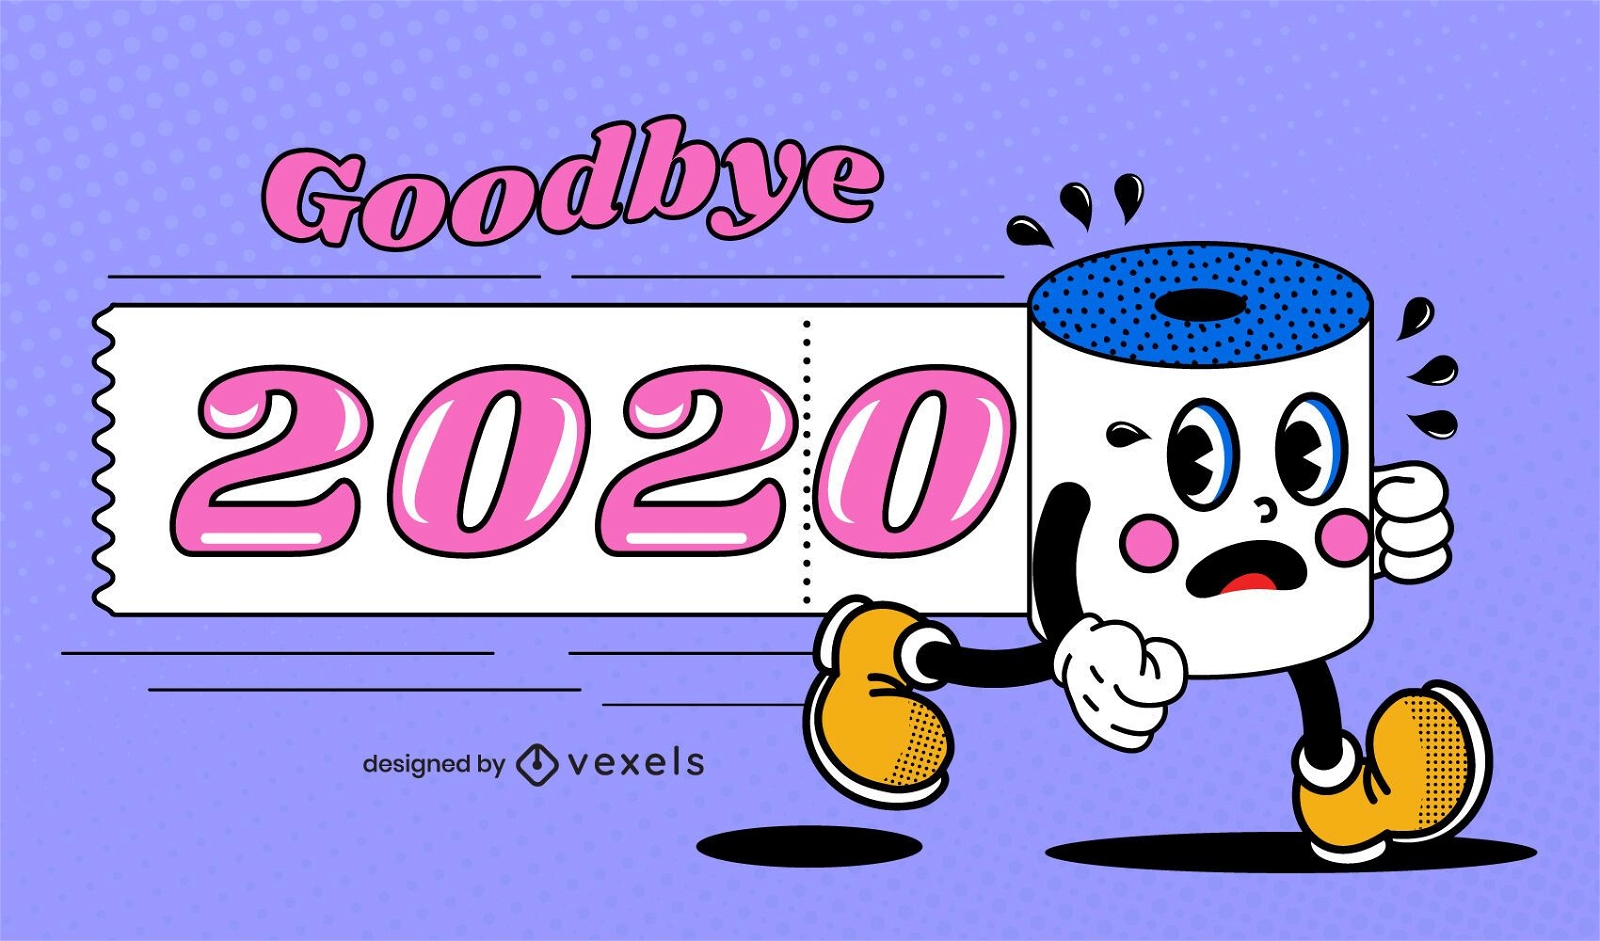 Goodbye 2020 funny illustration